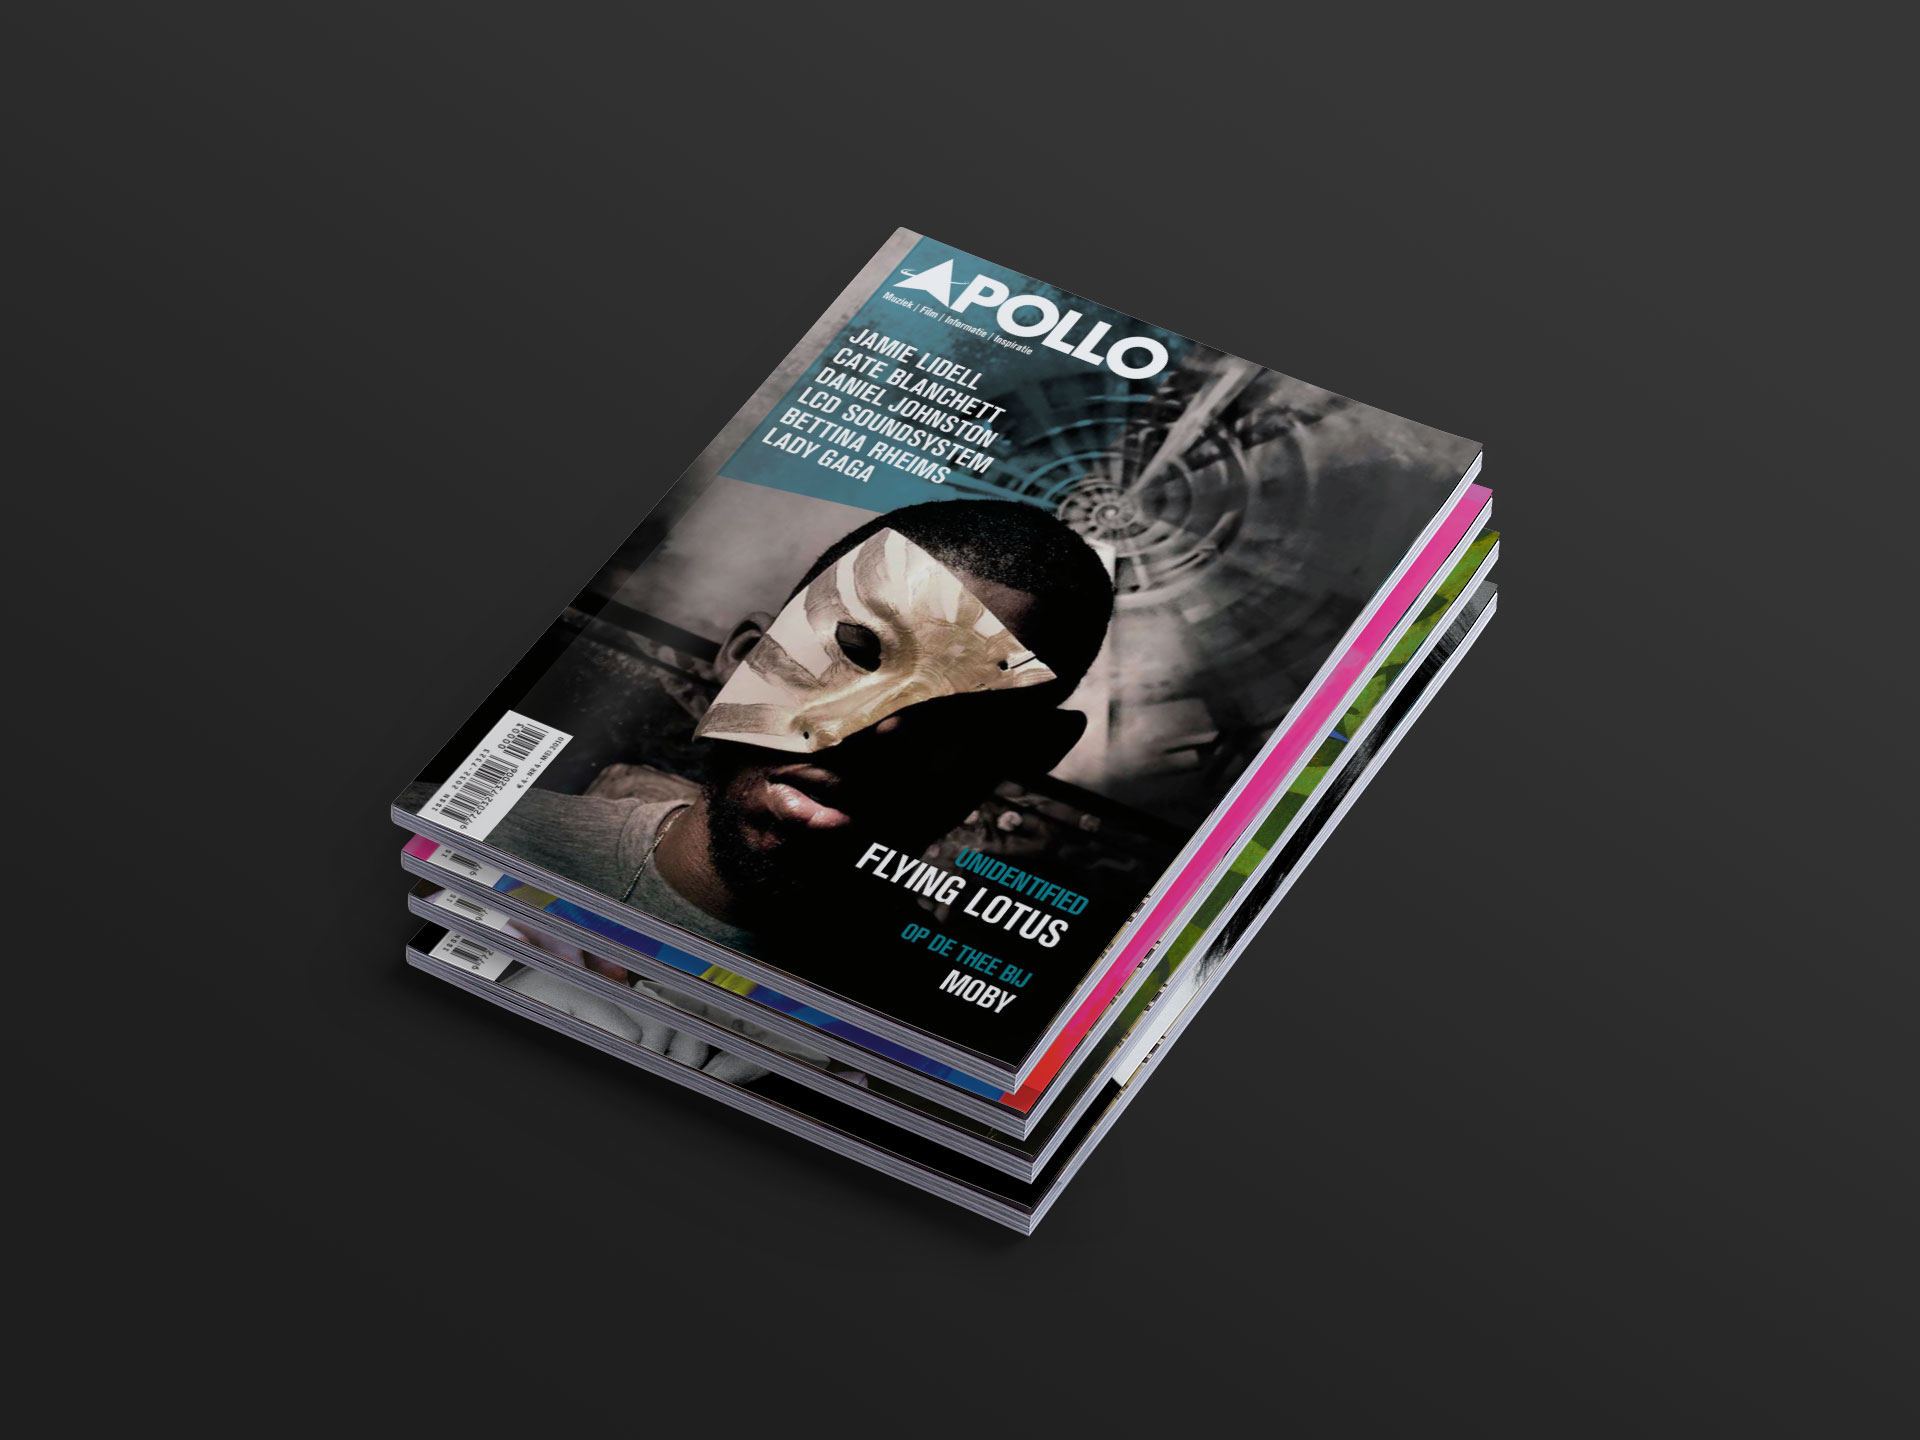 Apollo Magazine